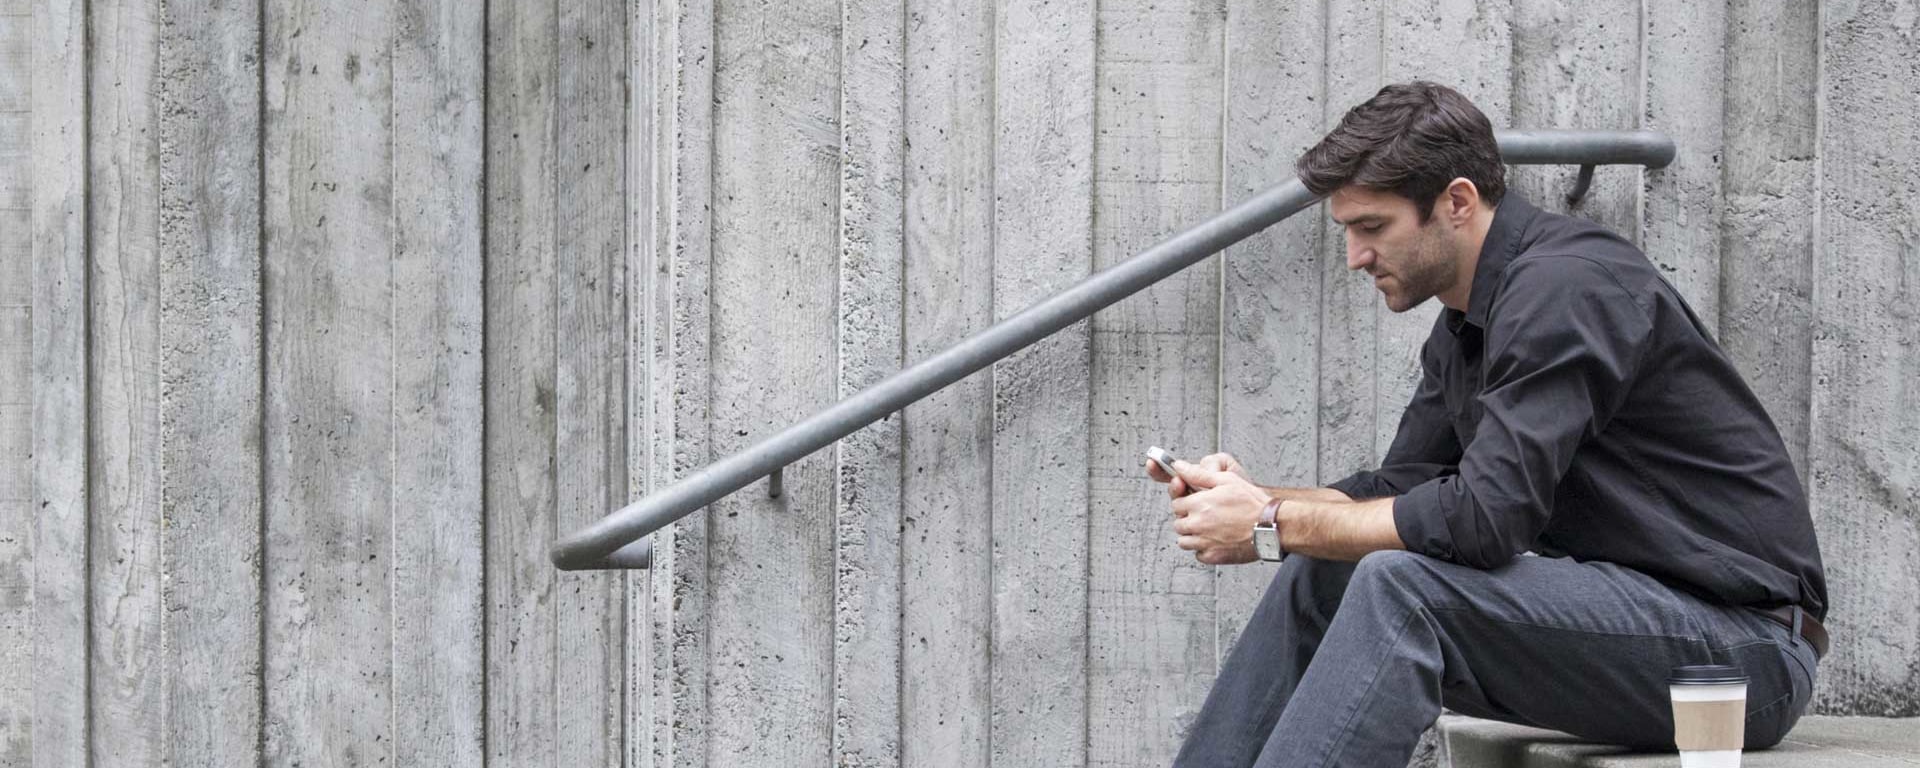 Ein junger Mann mit schwarzer Jacke sitzt auf einer Treppe und schaut in sein Smartphone.